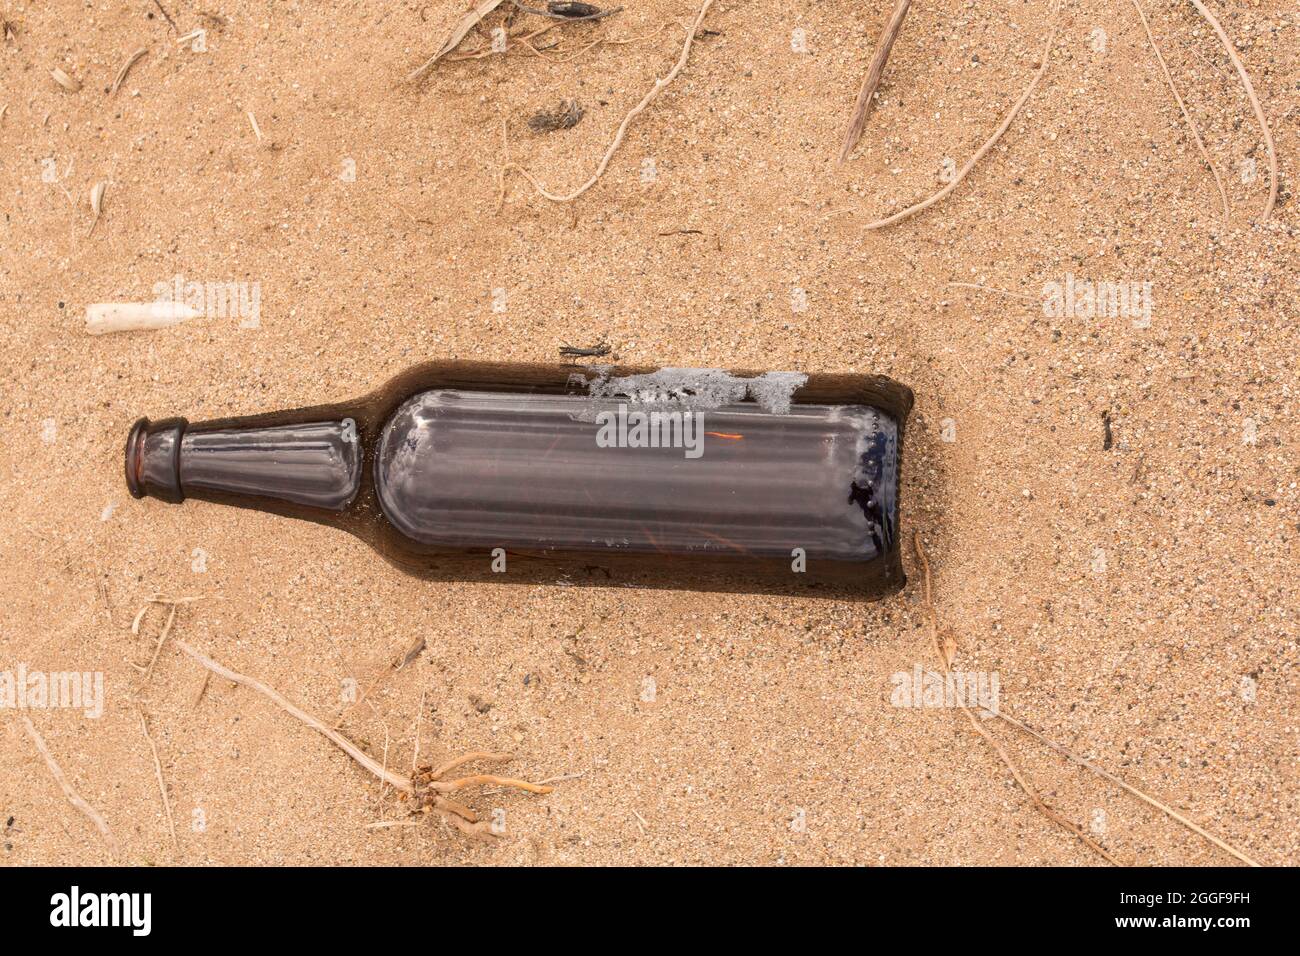 Qualcuno ha lasciato una bottiglia vuota sulla sabbia invece di riciclarla. Foto Stock